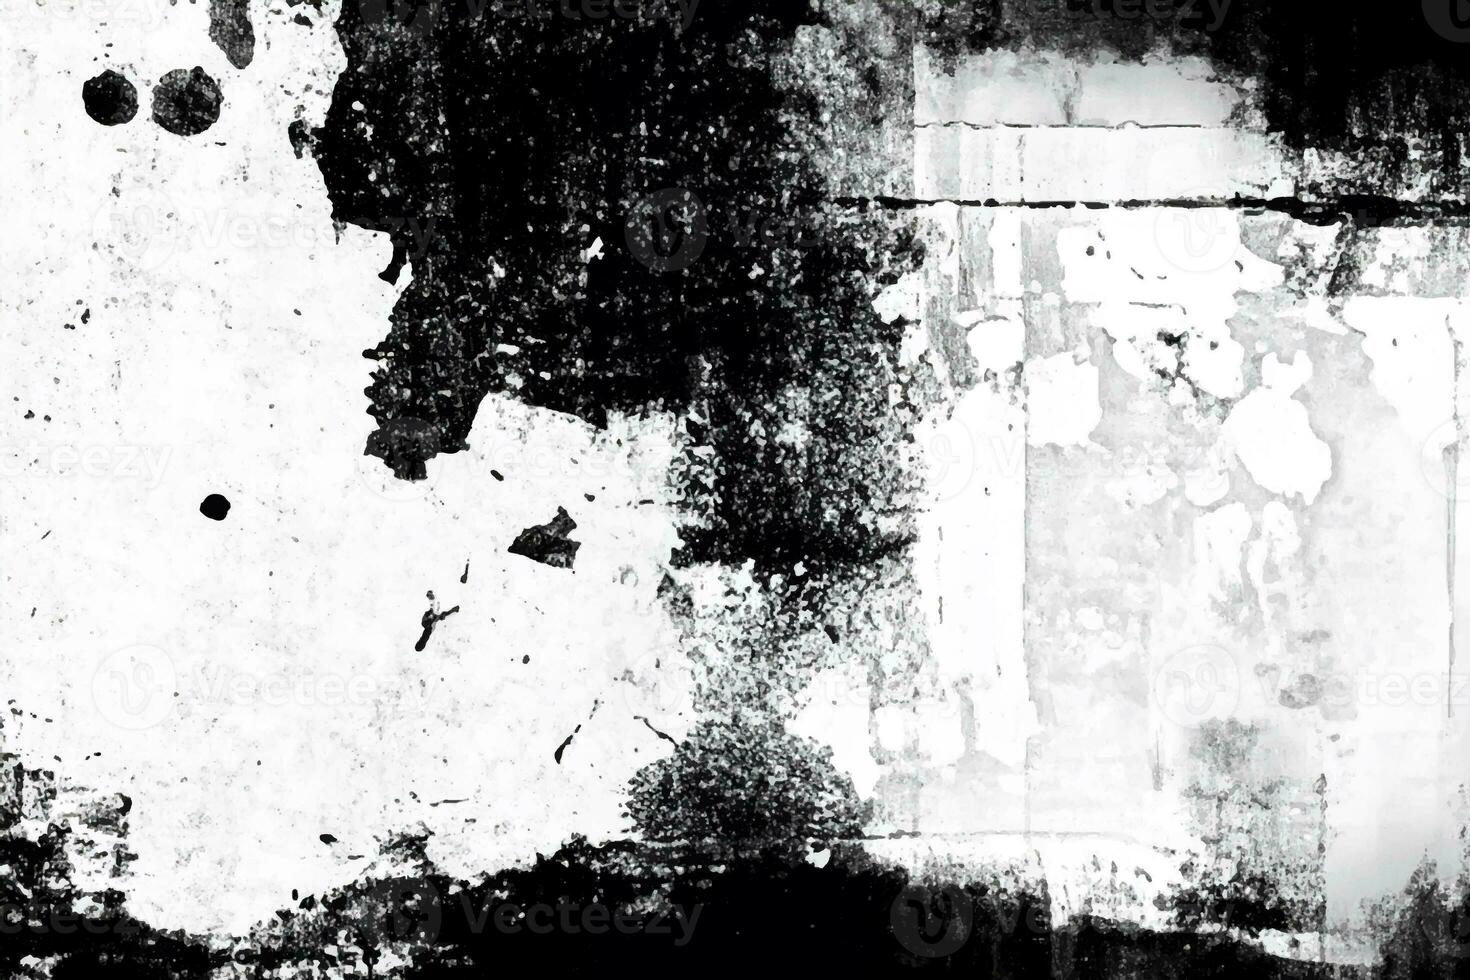 vit grunge bedrövad textur foto